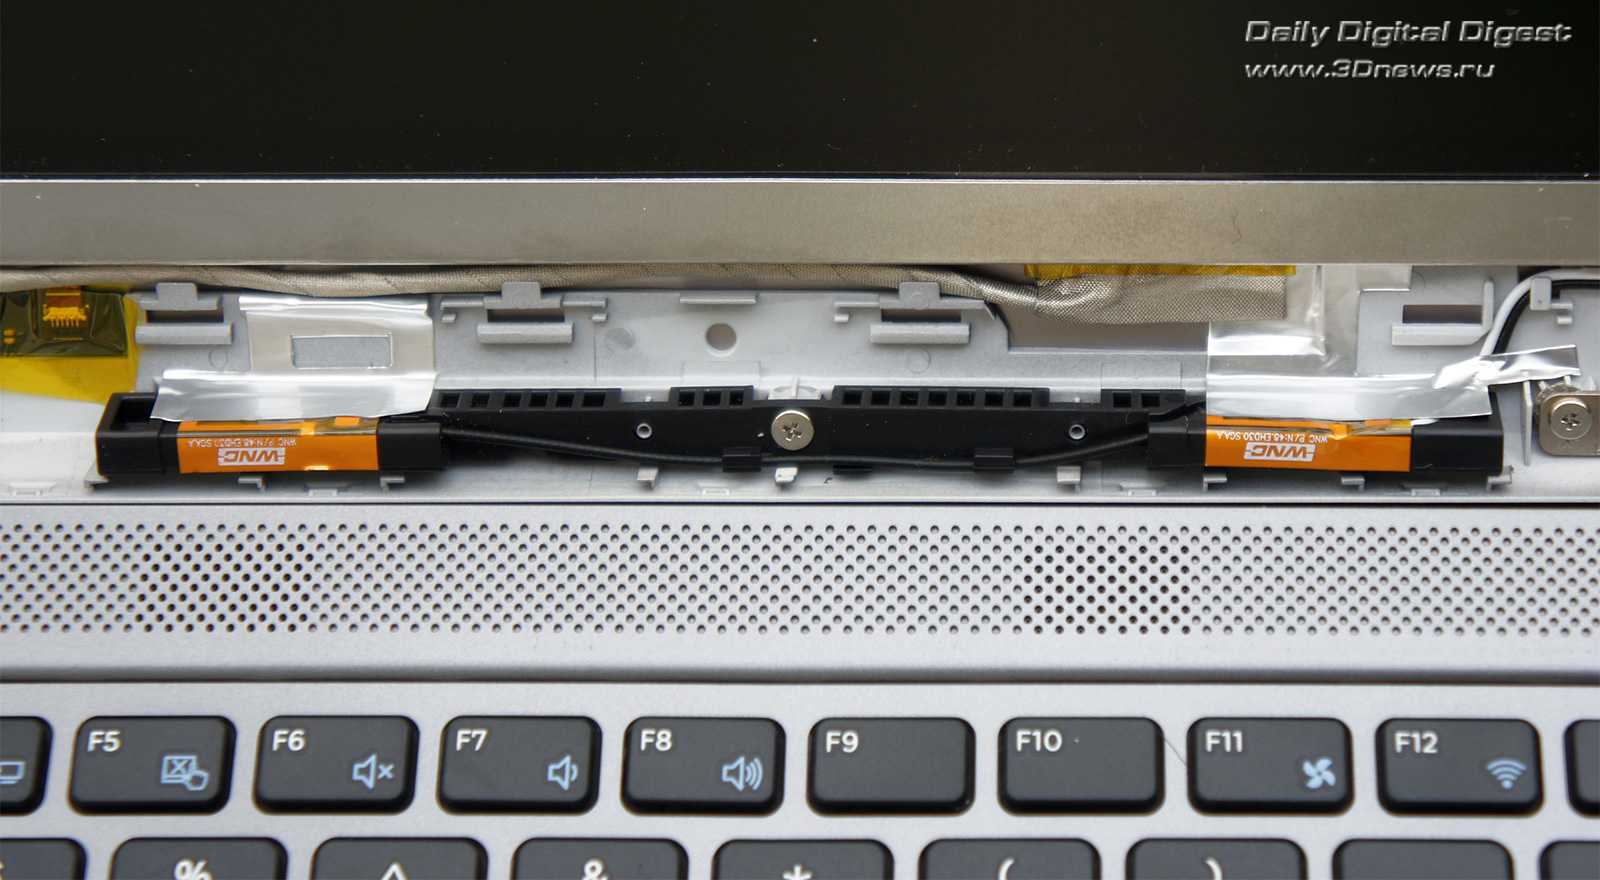 Ноутбук samsung 530u4c-s08 — купить, цена и характеристики, отзывы